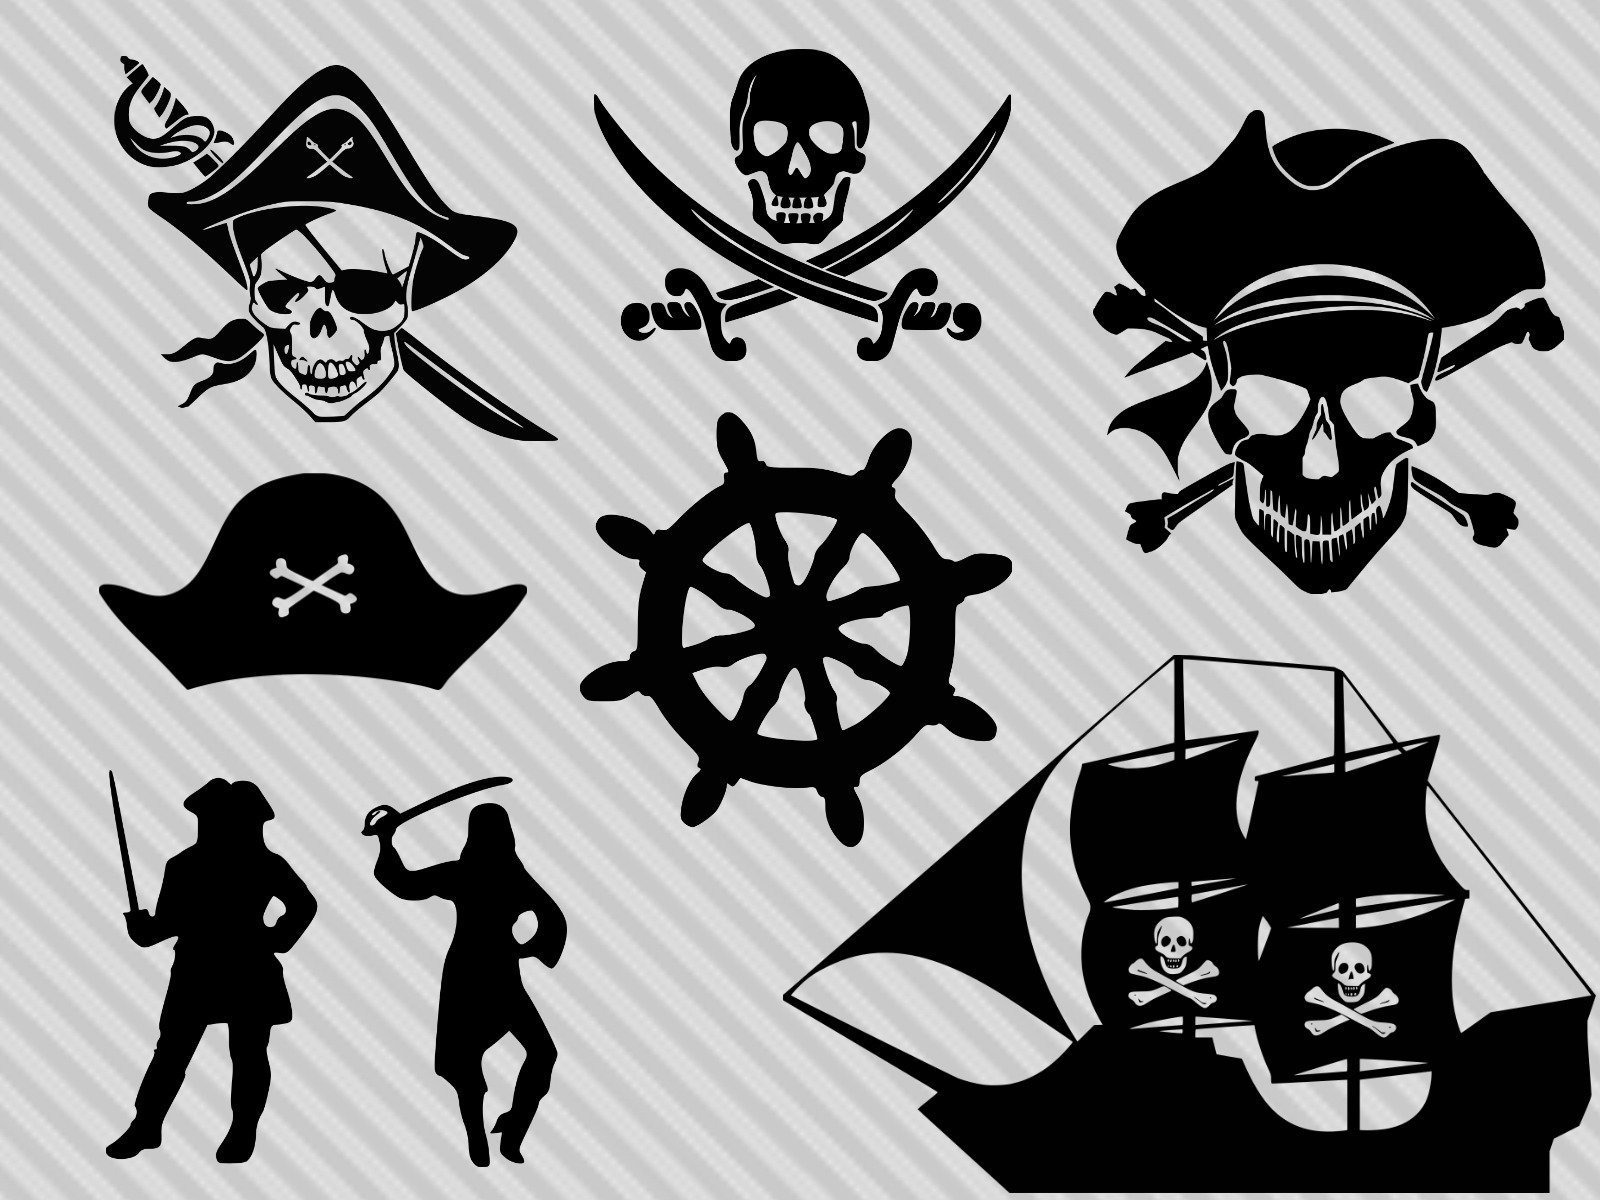 Пиратская ж. Значок пирата. Пиратская атрибутика. Пиратская тематика картинки.